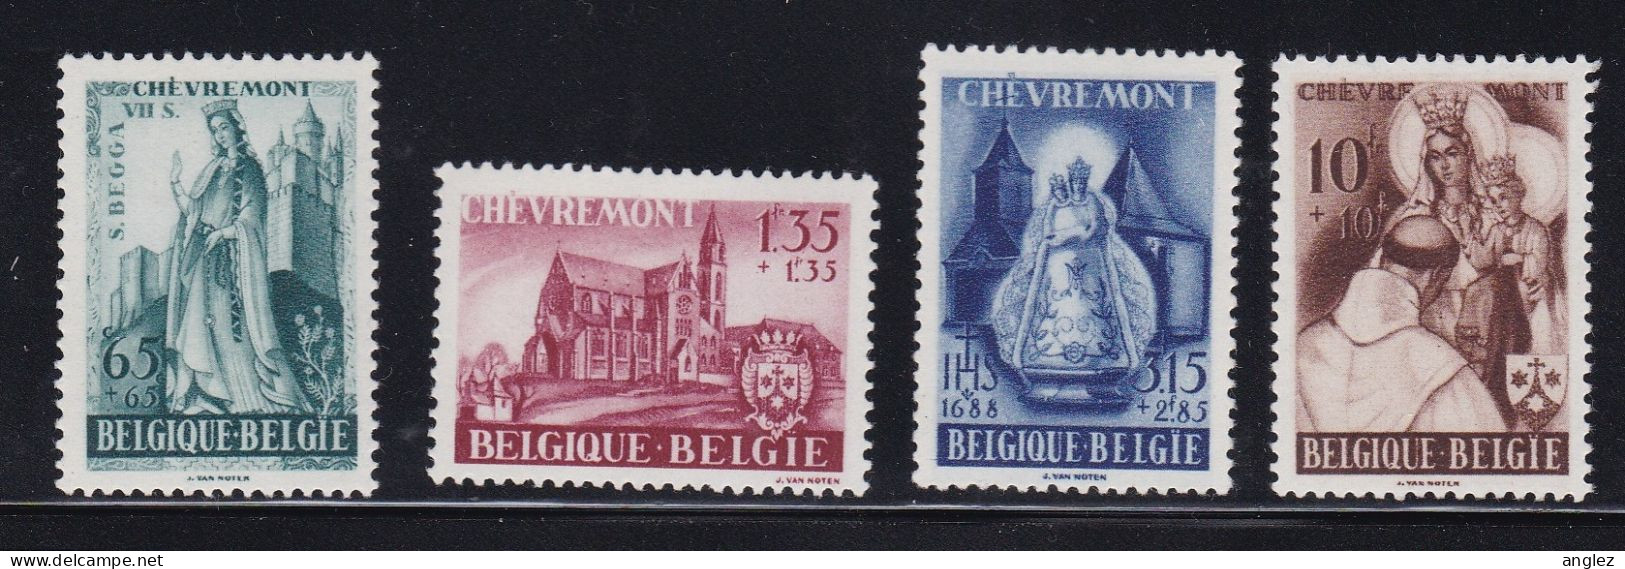 Belgium - 1948 Chevremont Set 4v MH - Unused Stamps